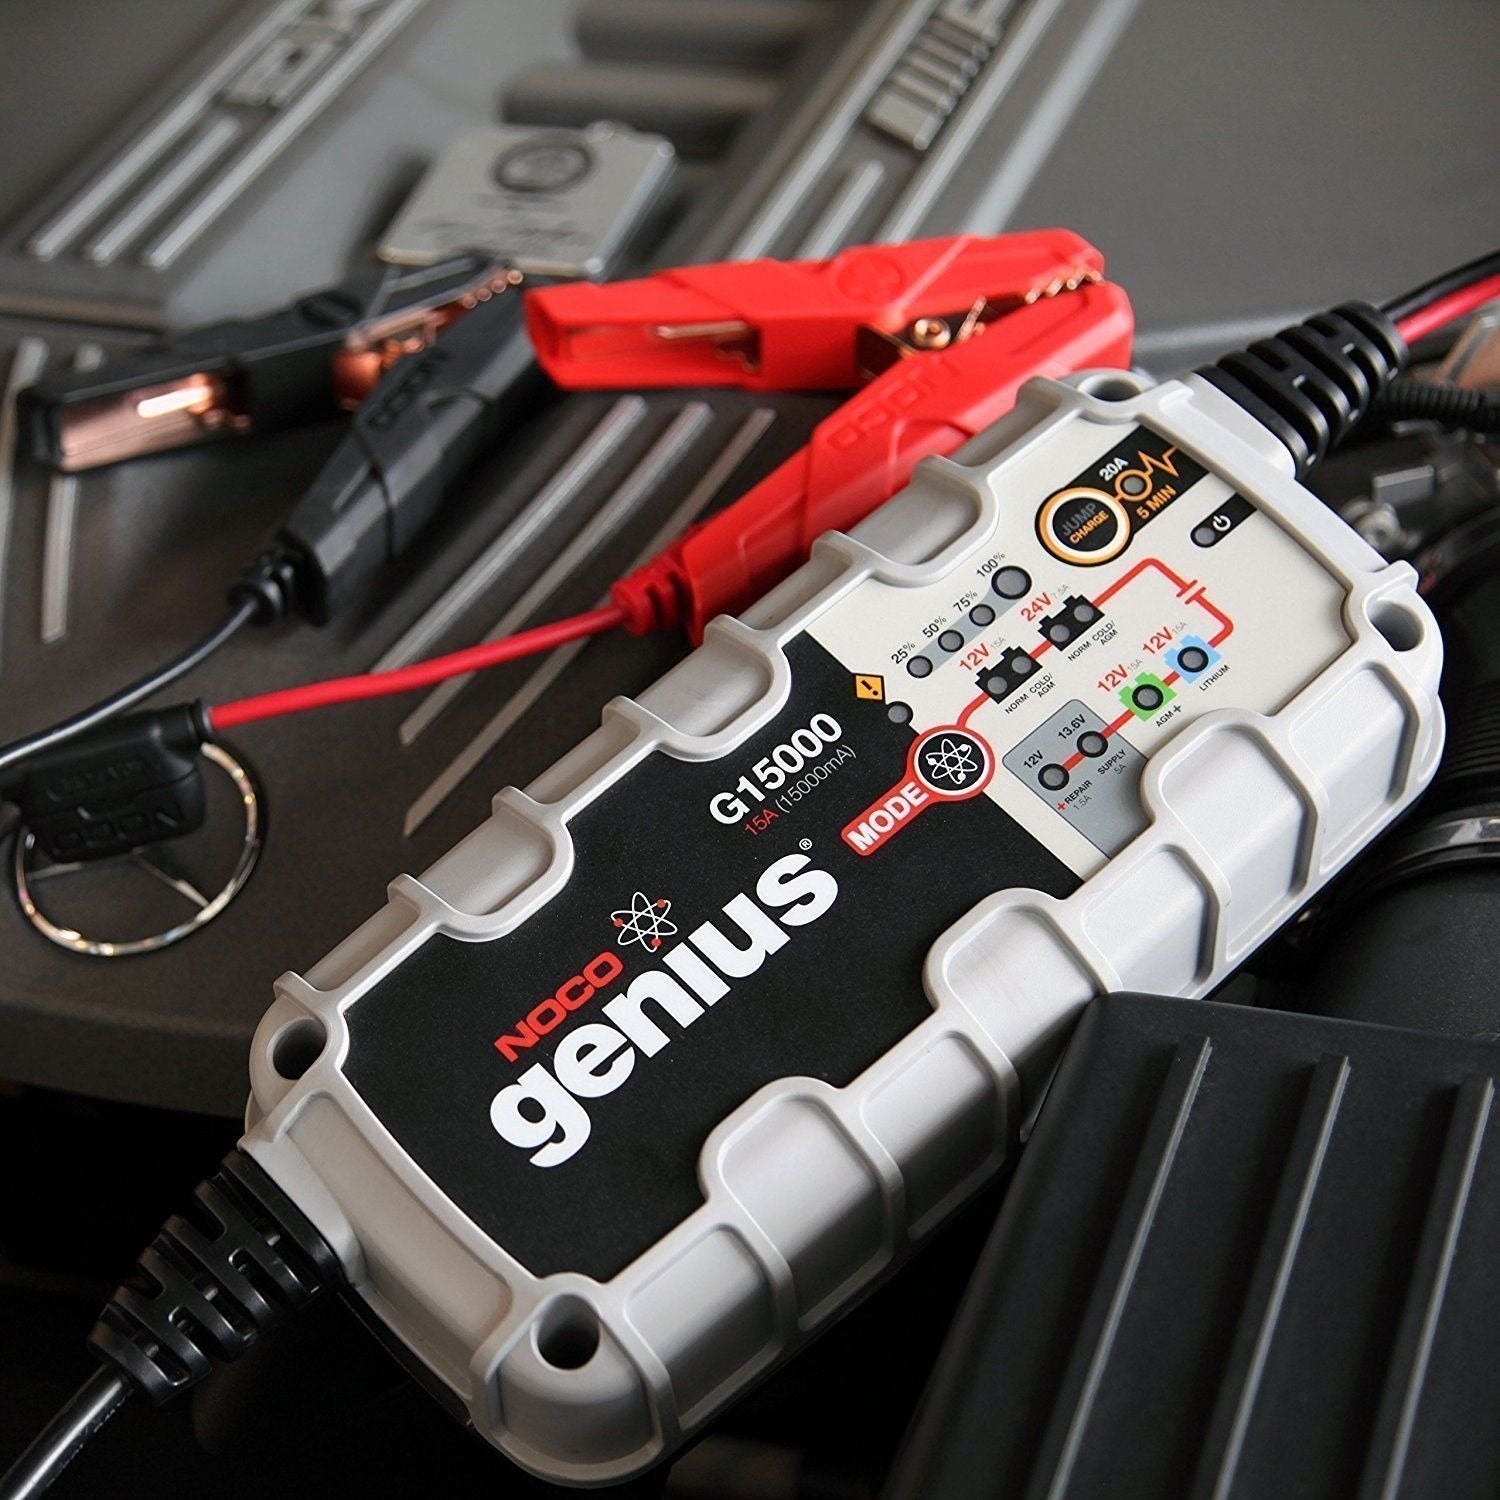 Spécialités Électriques - Noco genius G15000 15 amperes batterie chargeur